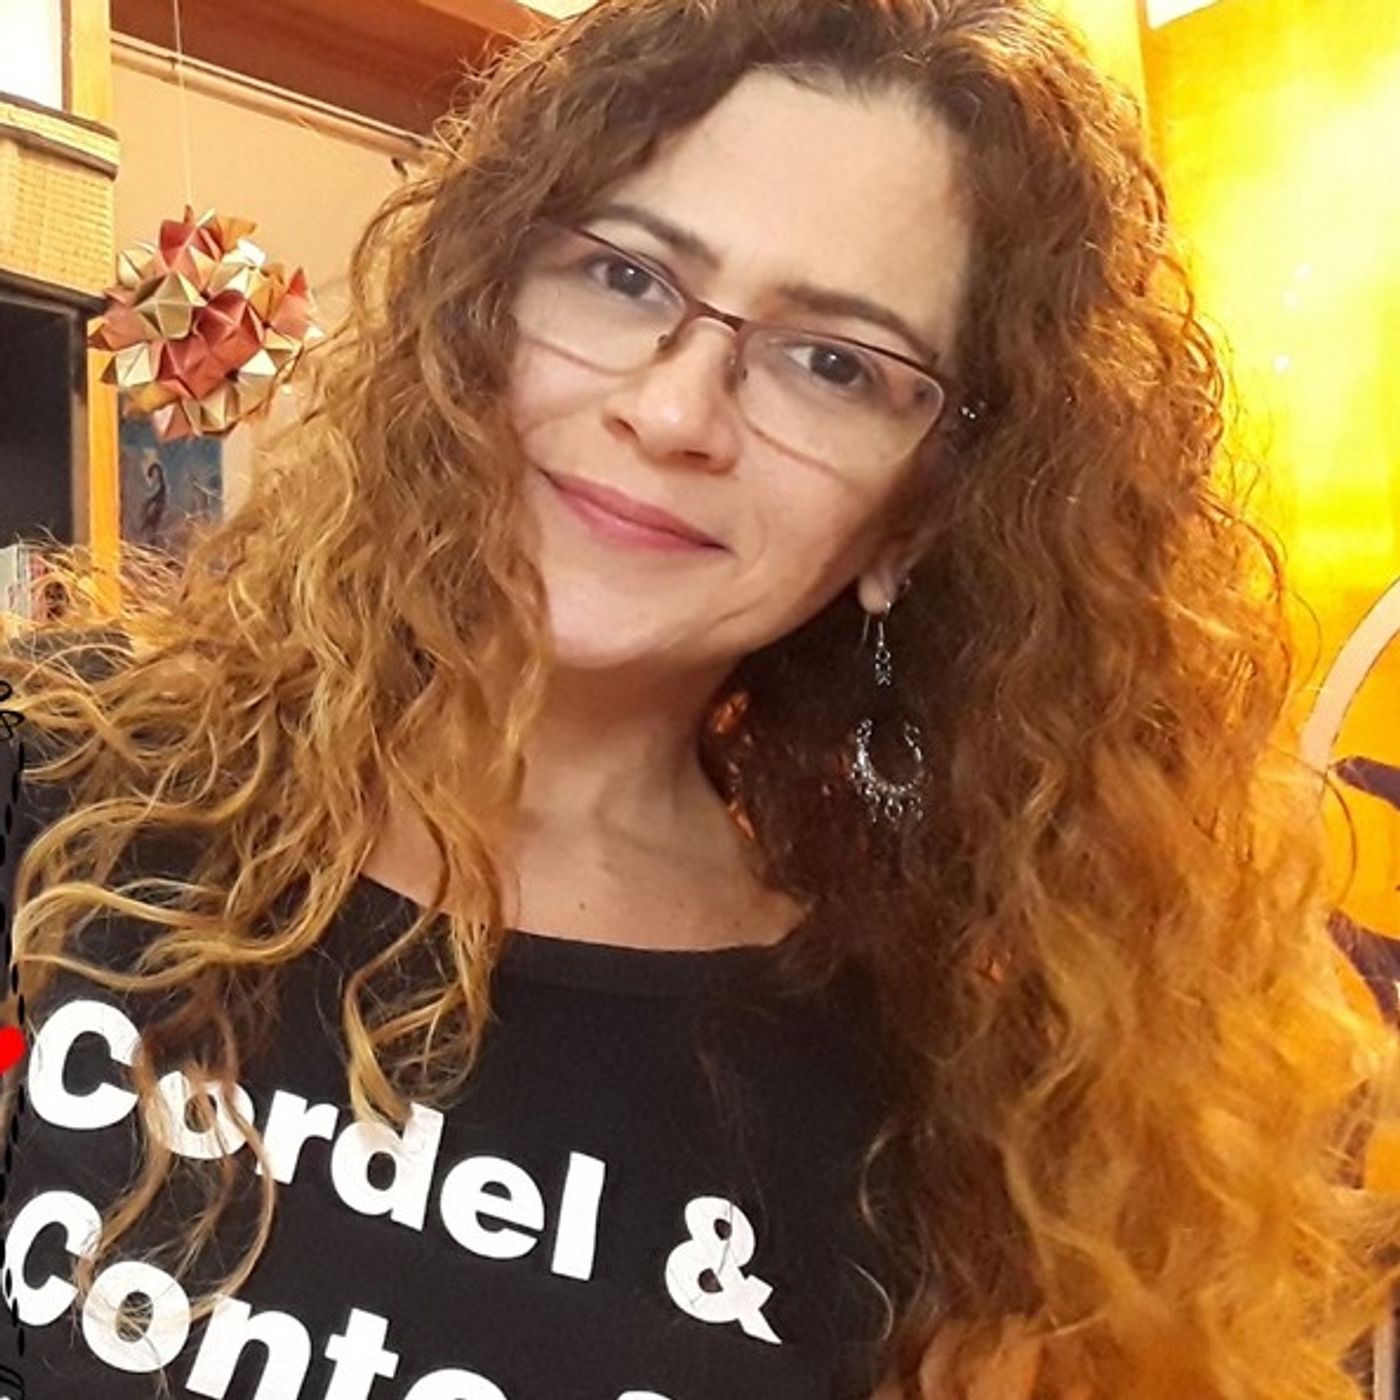 Janaina Corrêa's podcast